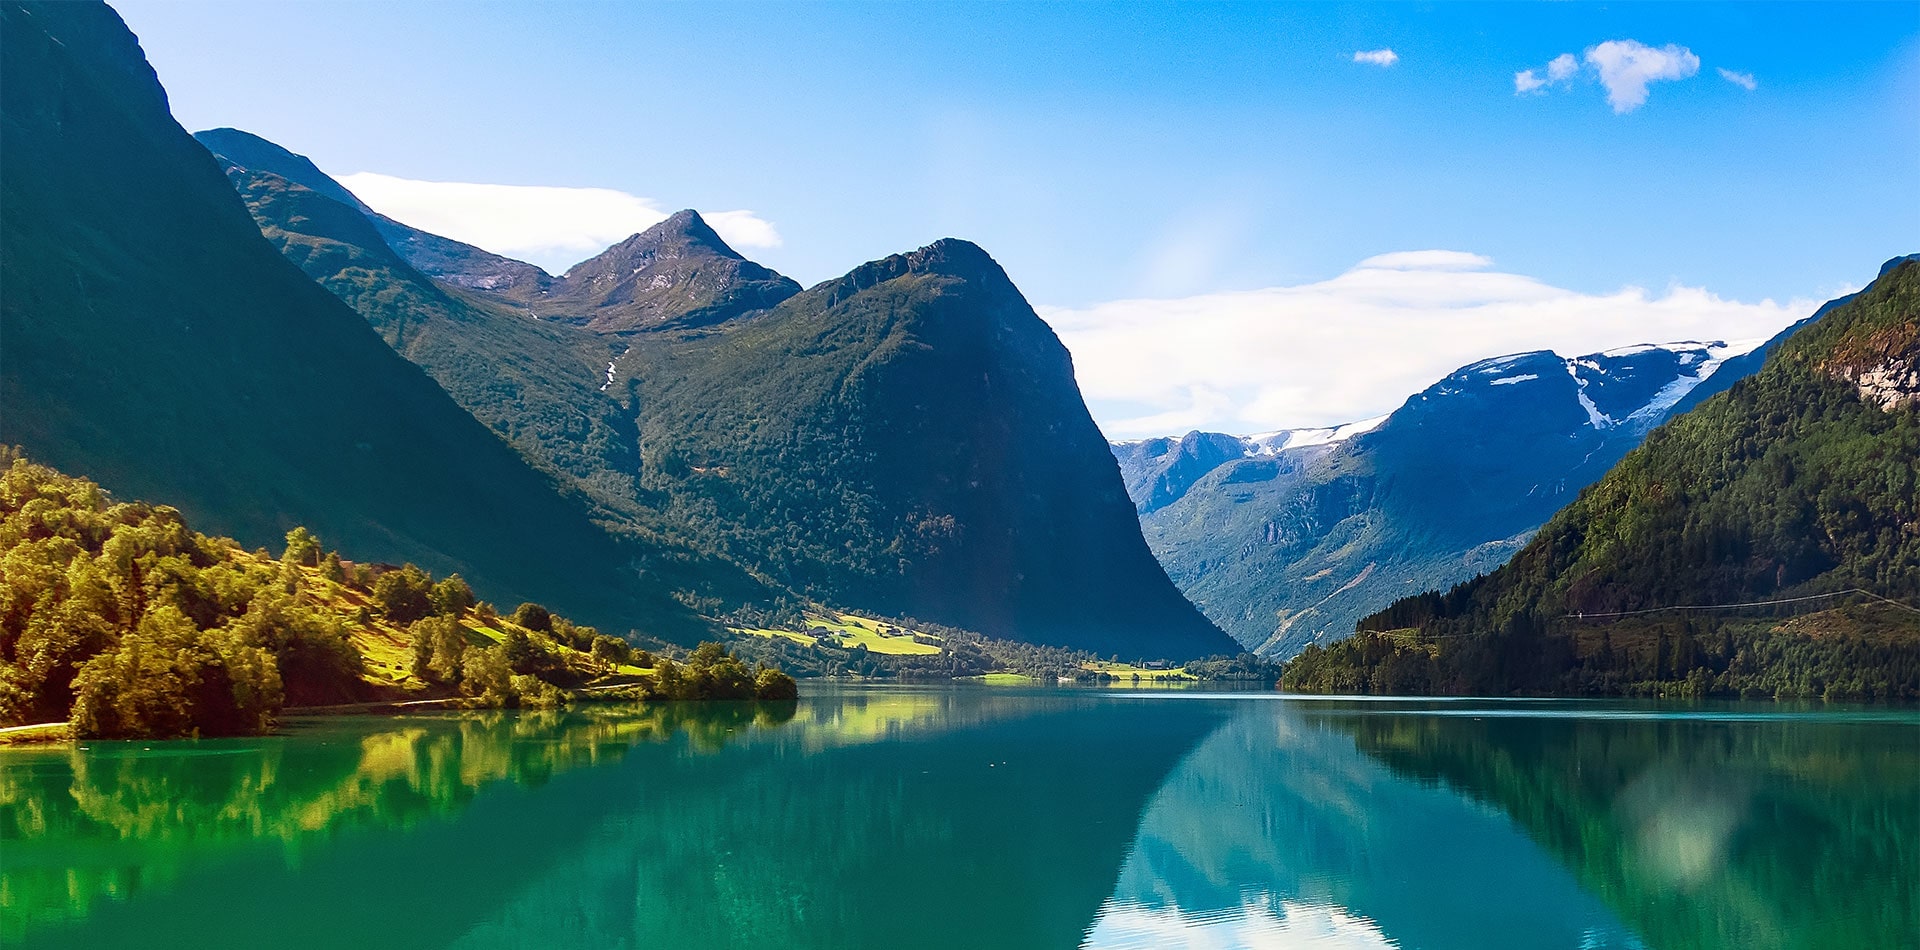 Beautiful views of Nordfjord, Norway